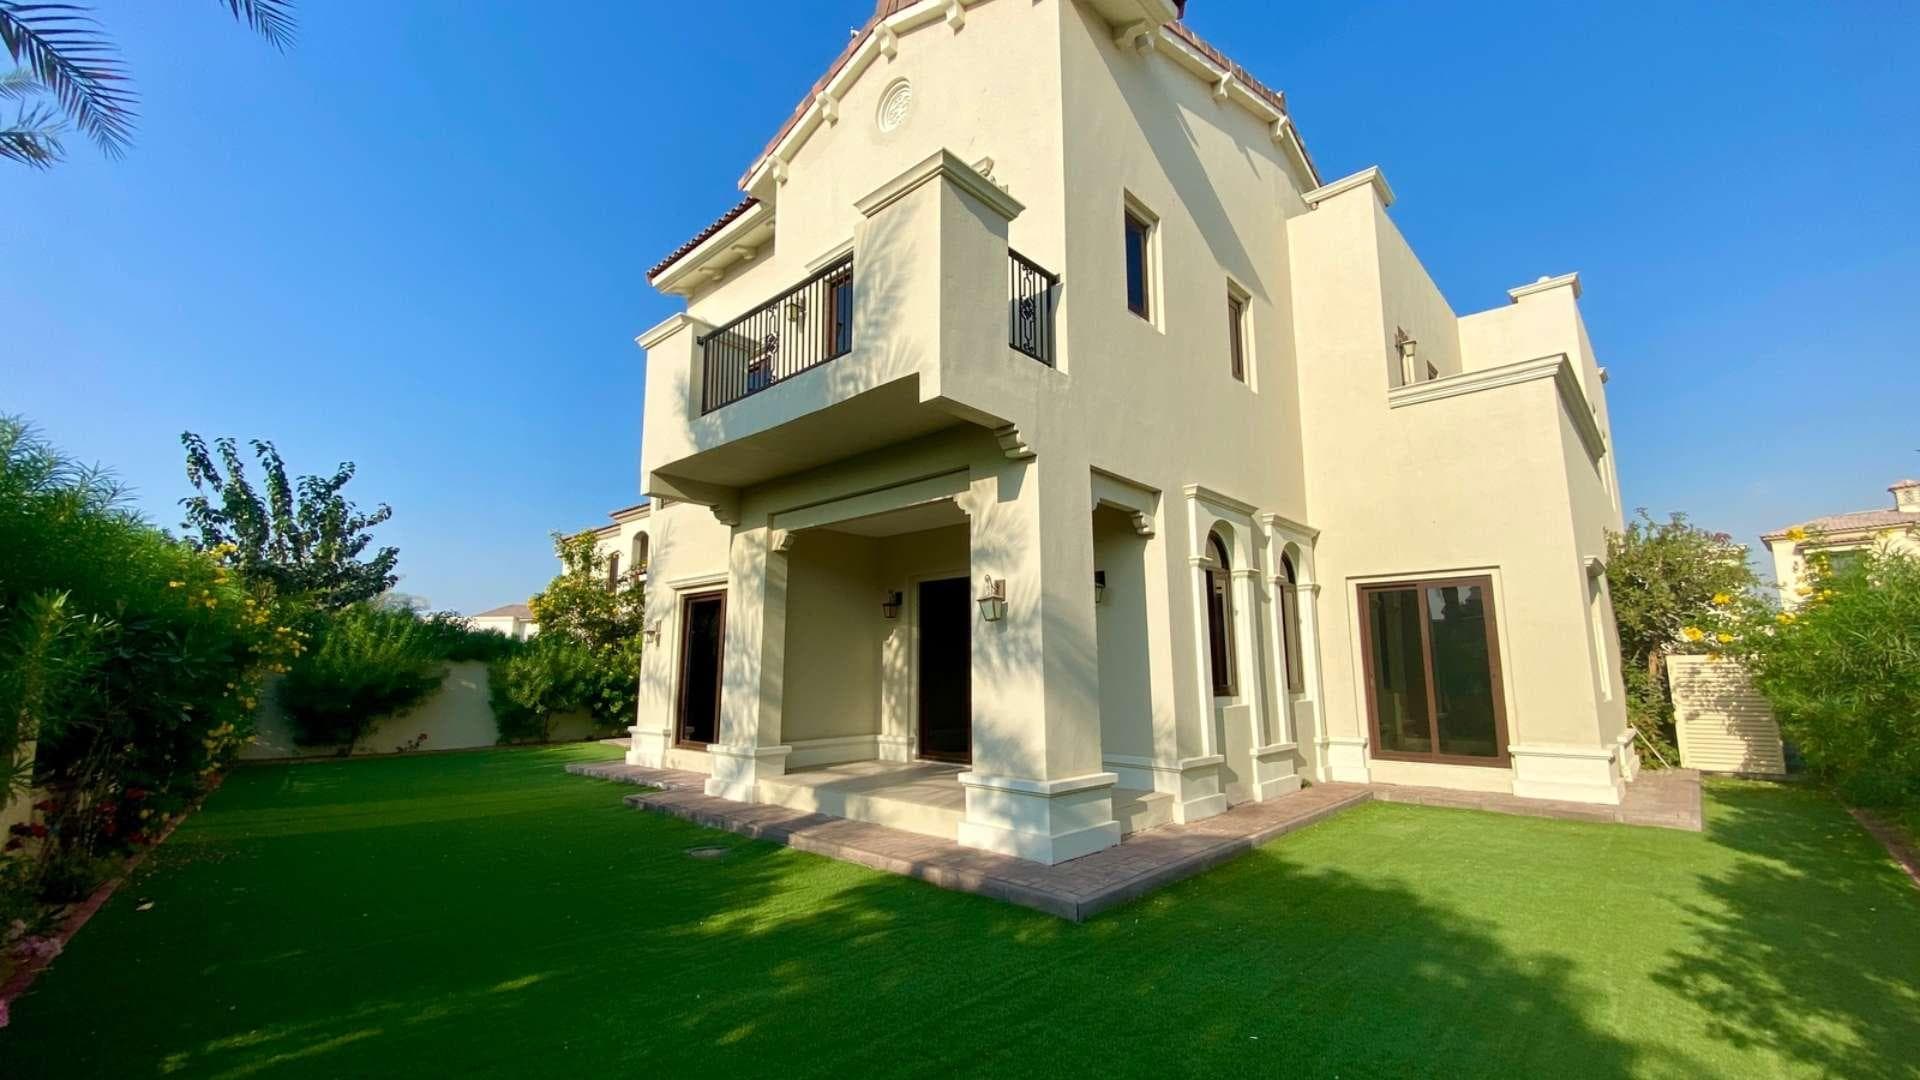 6 Bedroom Villa For Sale Aseel Lp37478 1aa75159d5c36300.jpg